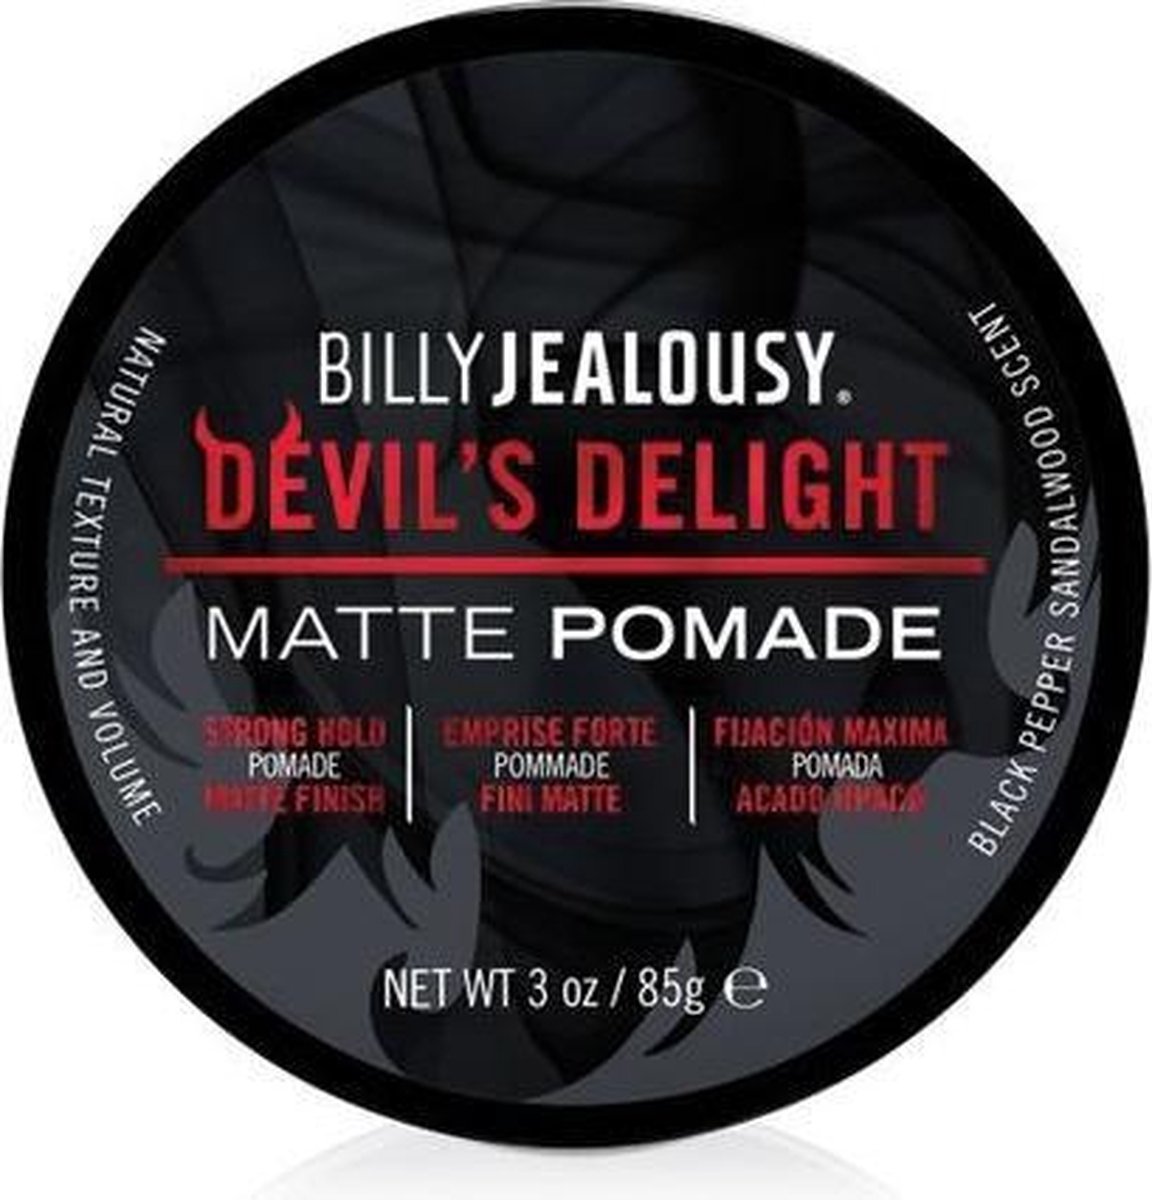 Billy Jealousy Devil's Delight Matte Pomade 85 gr.